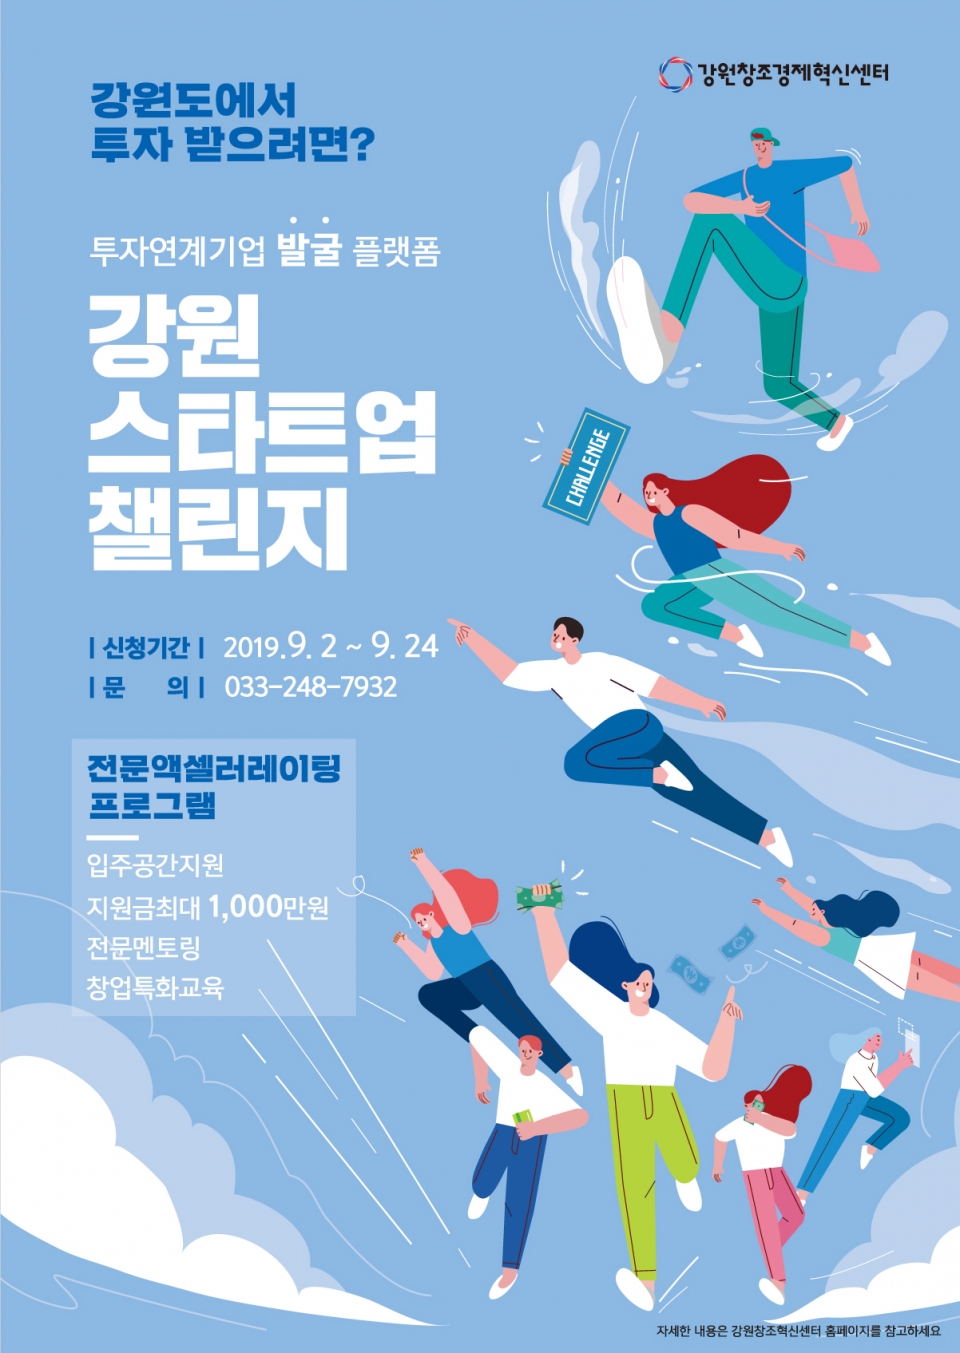 ‘2019 하반기 강원 스타트업 챌린지’ 포스터. (출처: 강원창조경제혁신센터)